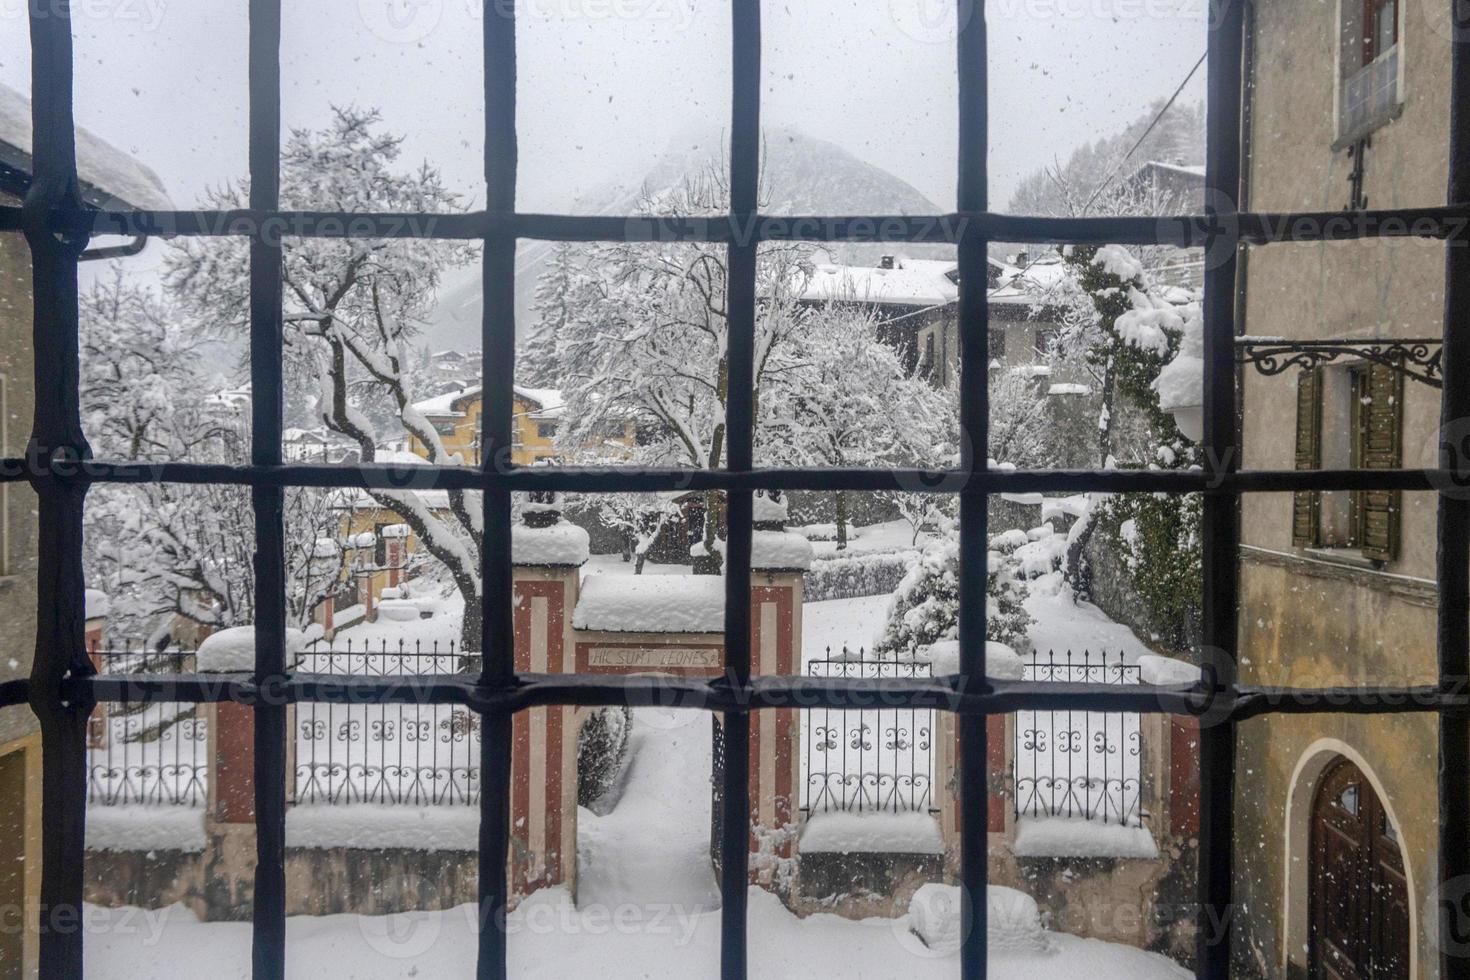 bormio medievale villaggio valtellinese Italia sotto il neve nel inverno foto